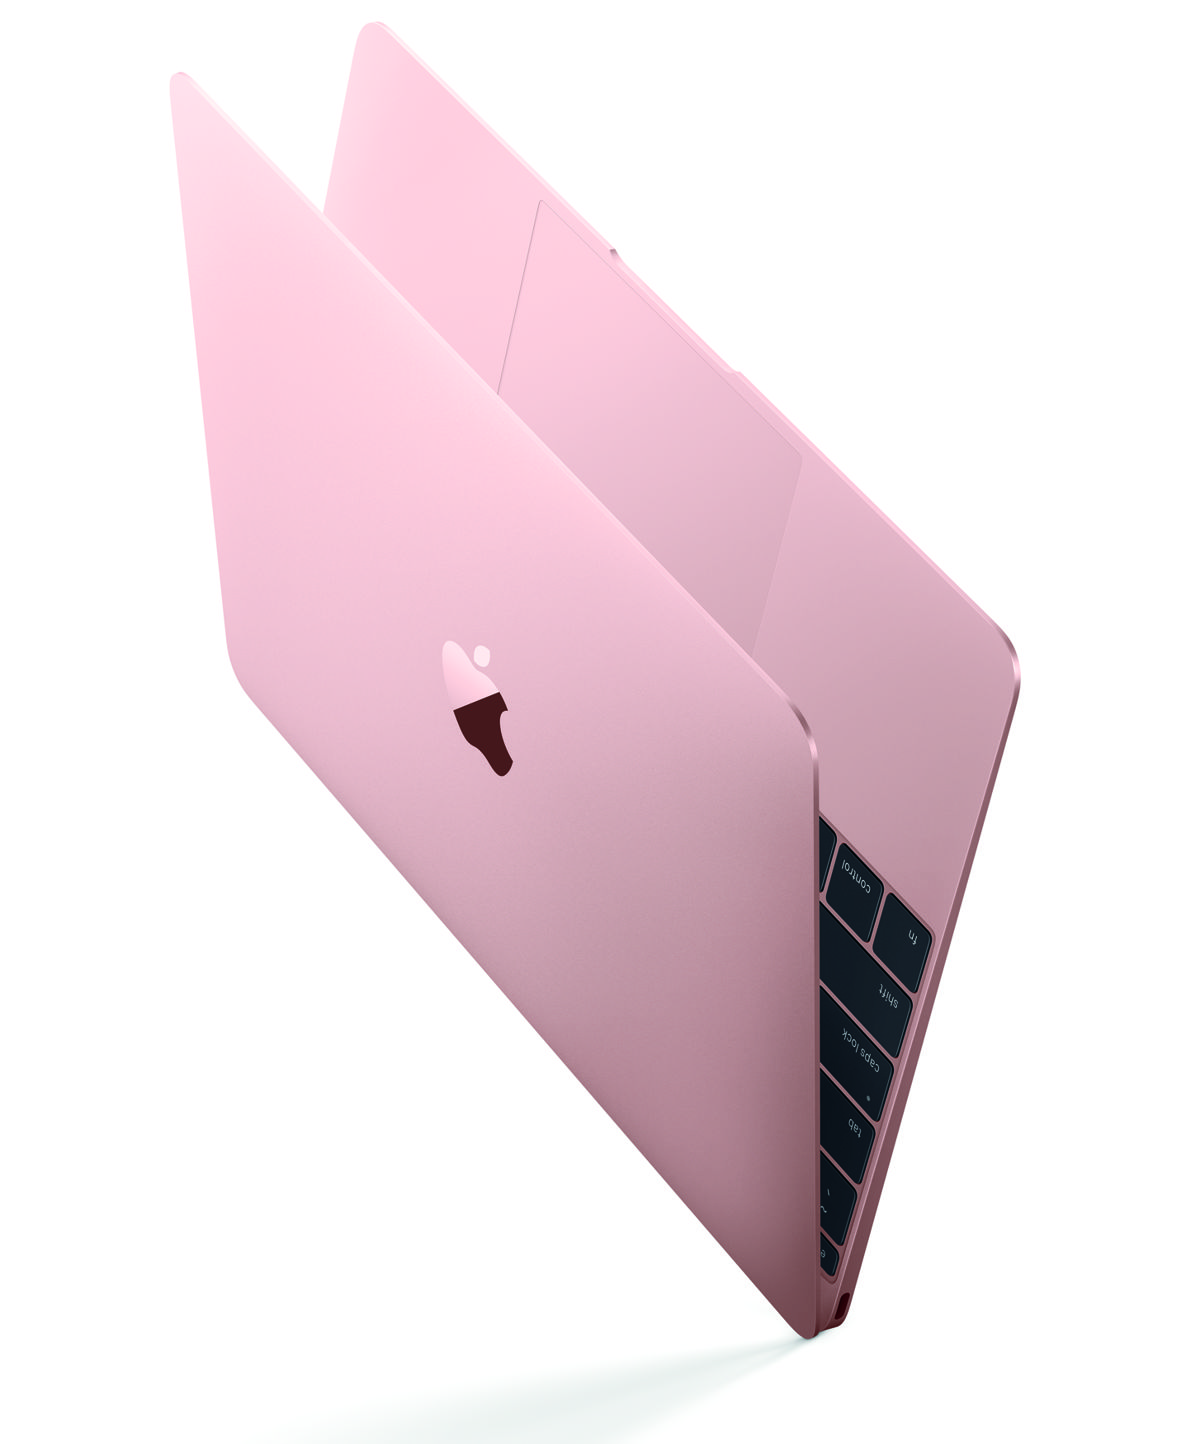 MacBook12inch RoseGold 01